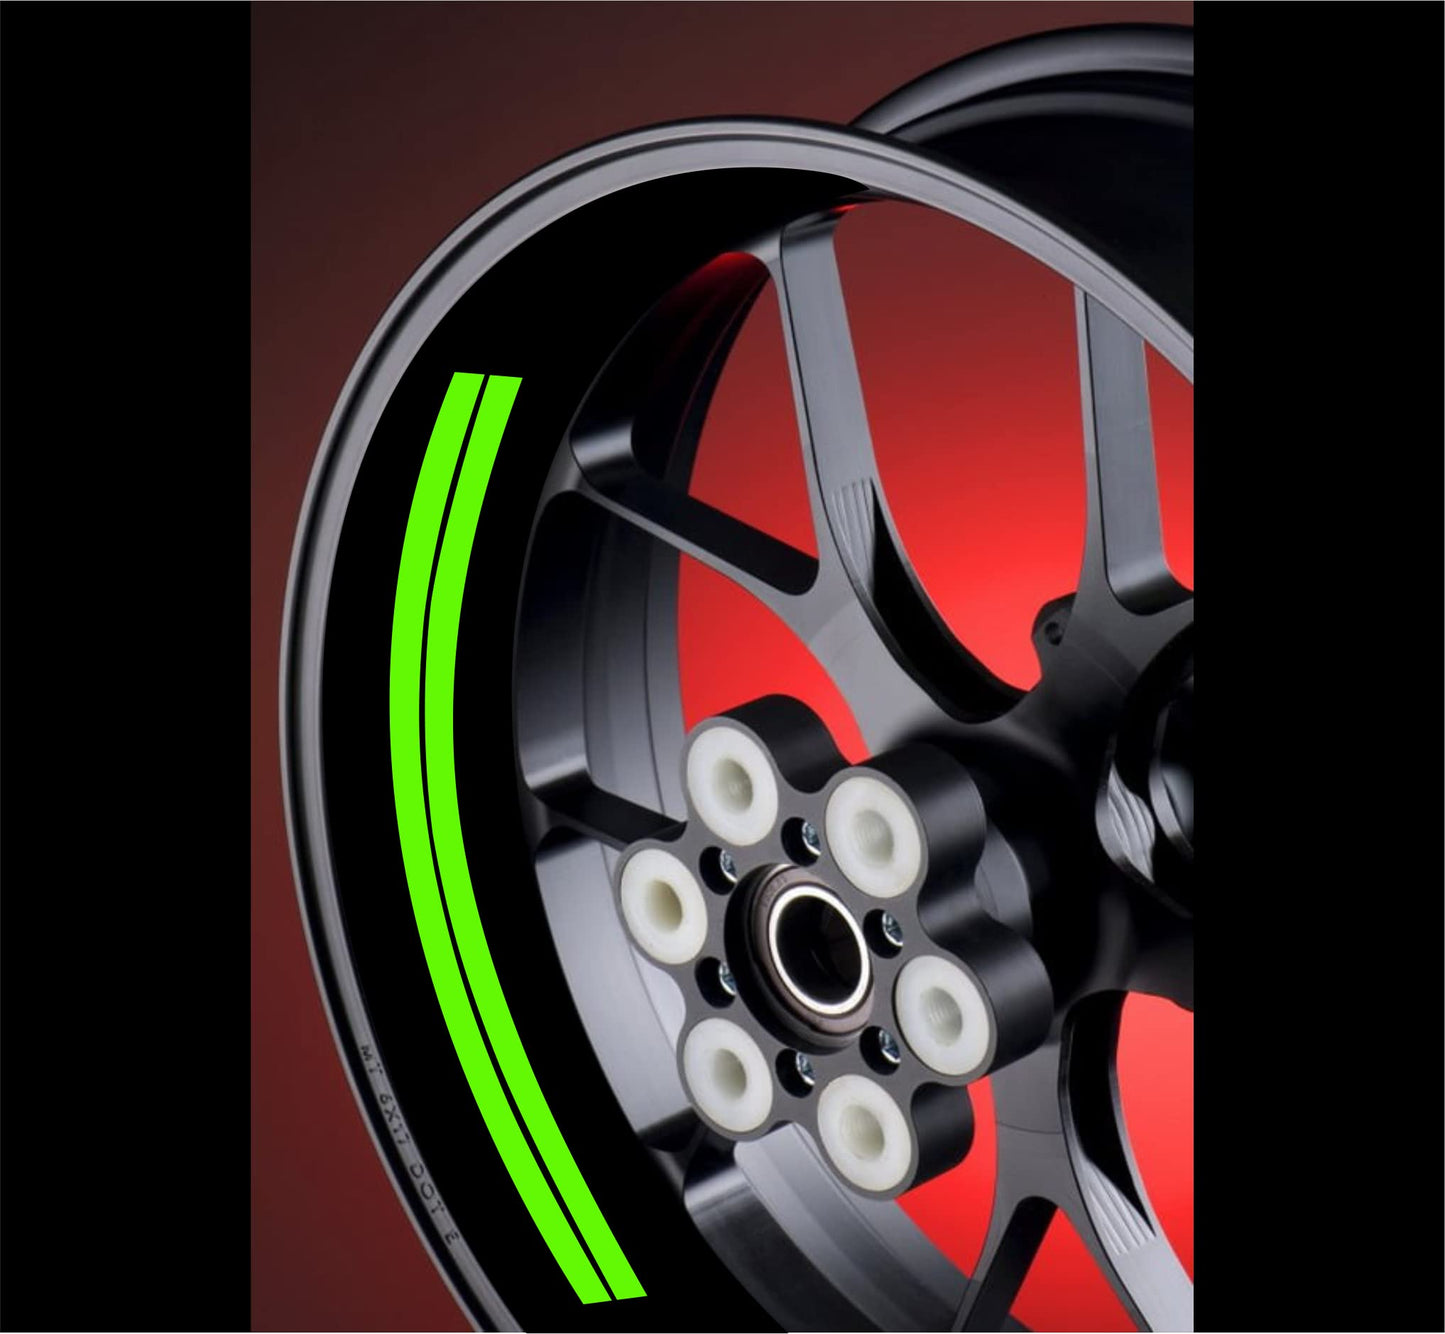 DualColorStampe Adesivi interno cerchi moto 17 POLLICI Compatibili con Ducati Suzuki Kawasaki Triumph cerchioni gomme strisce COD.D0067 a €11.99 solo da DualColorStampe